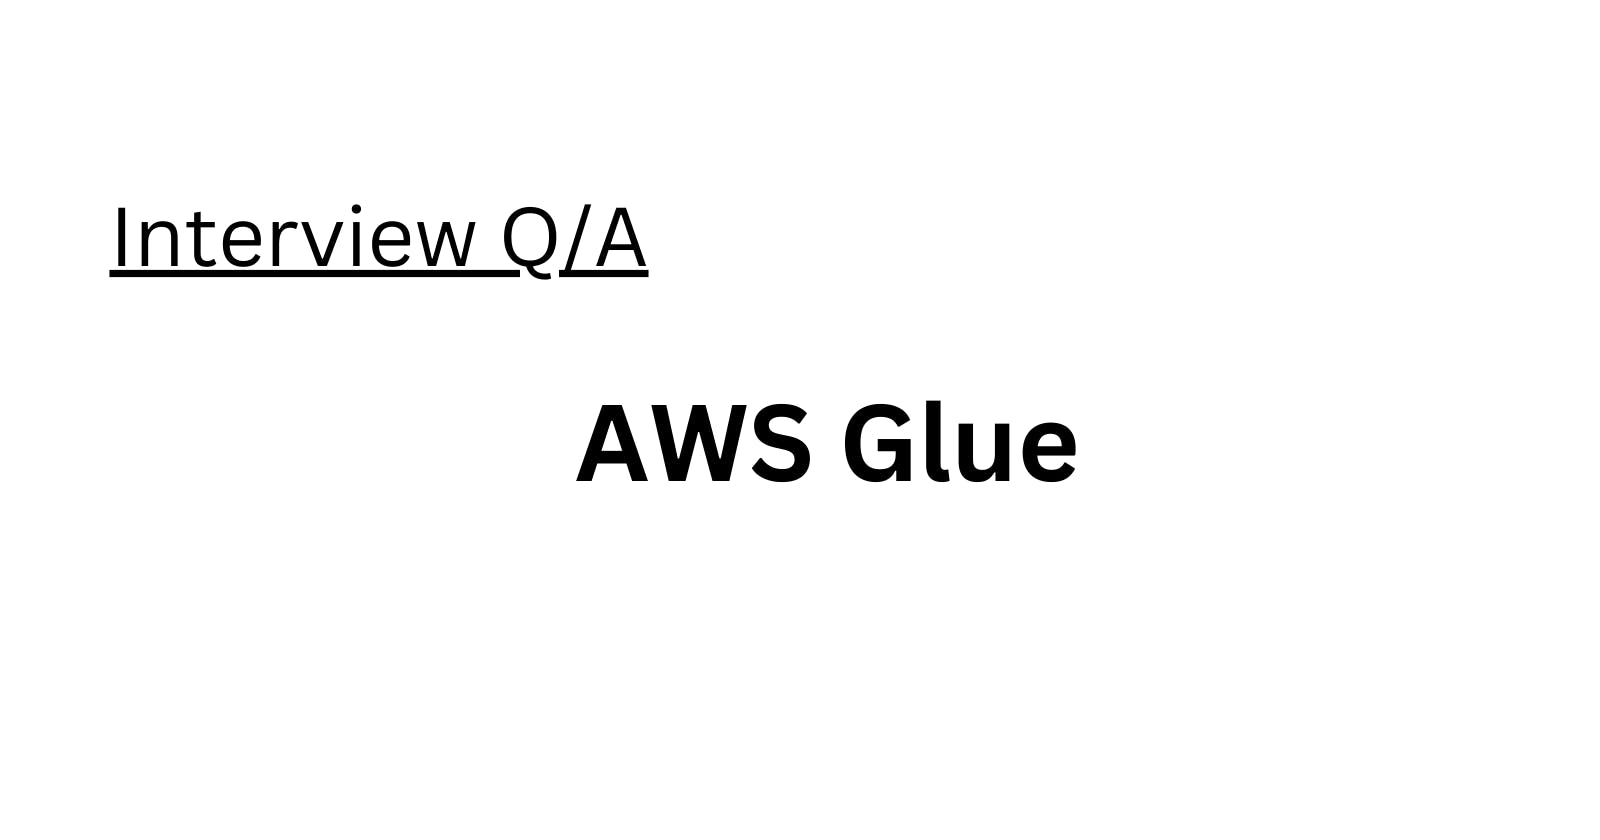 AWS Glue Interview Q/A